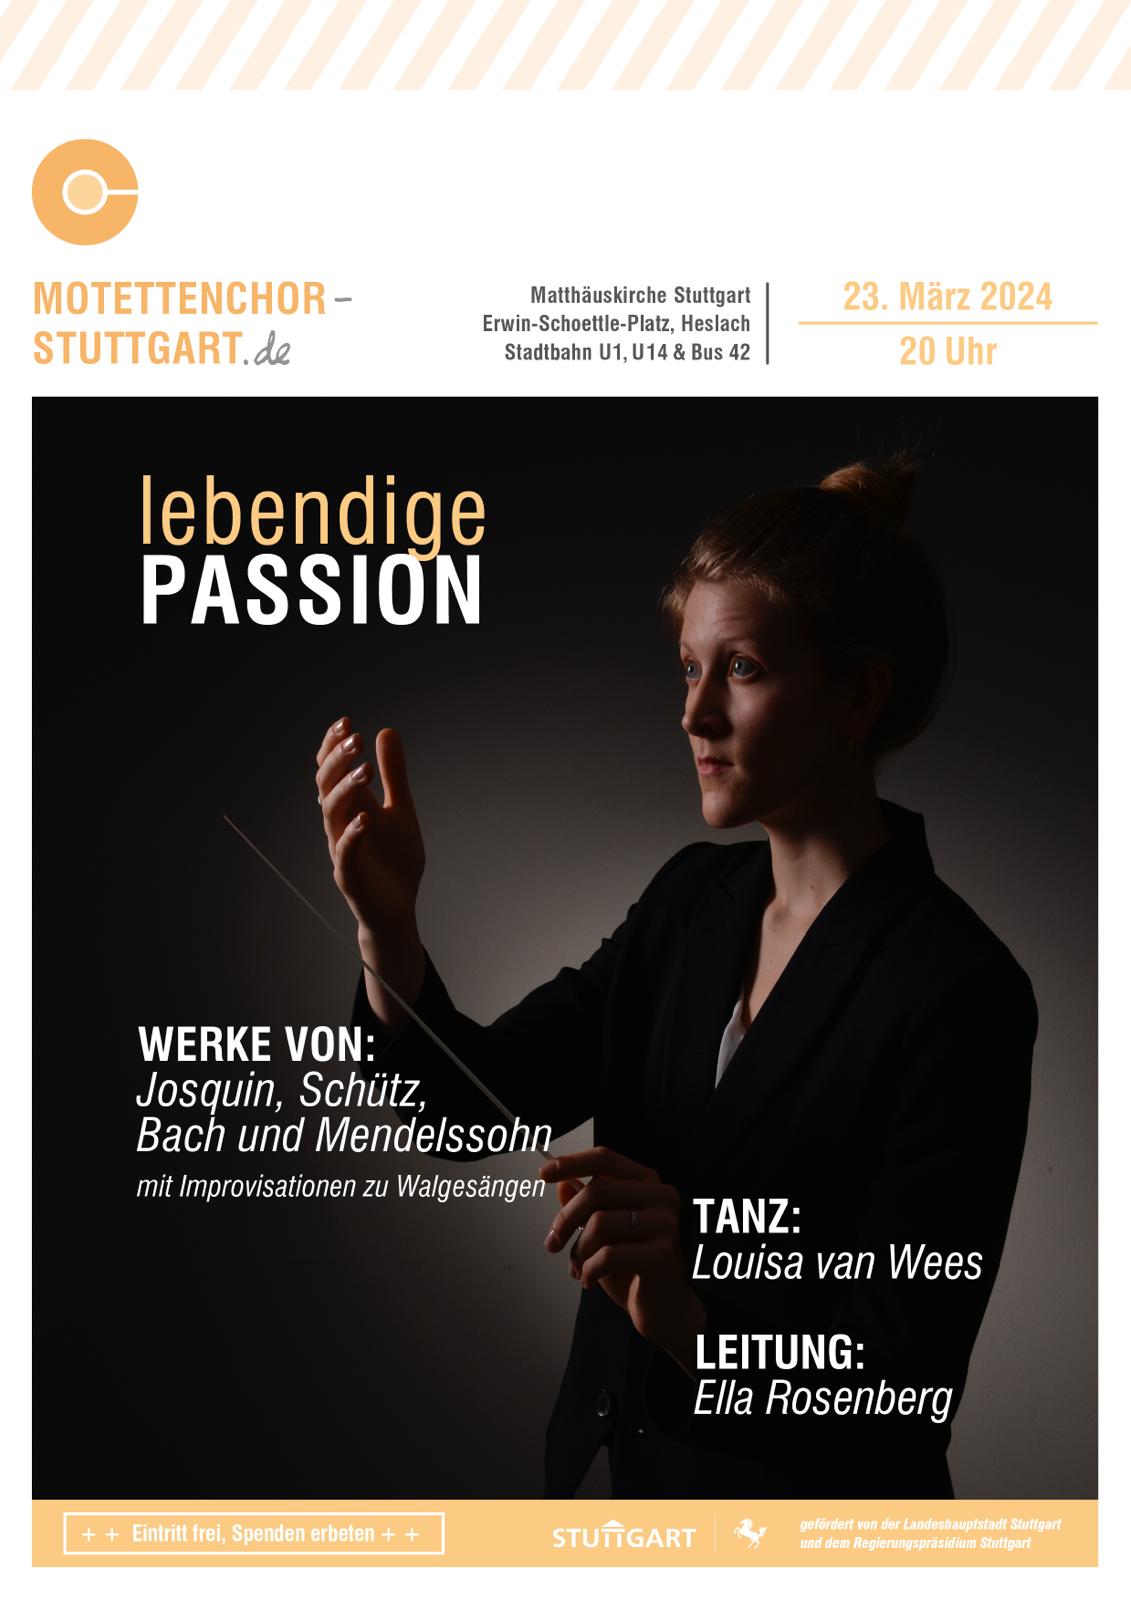 Bild des Plakates für das Konzert lebendige Passion des Motettenchor Stuttgart